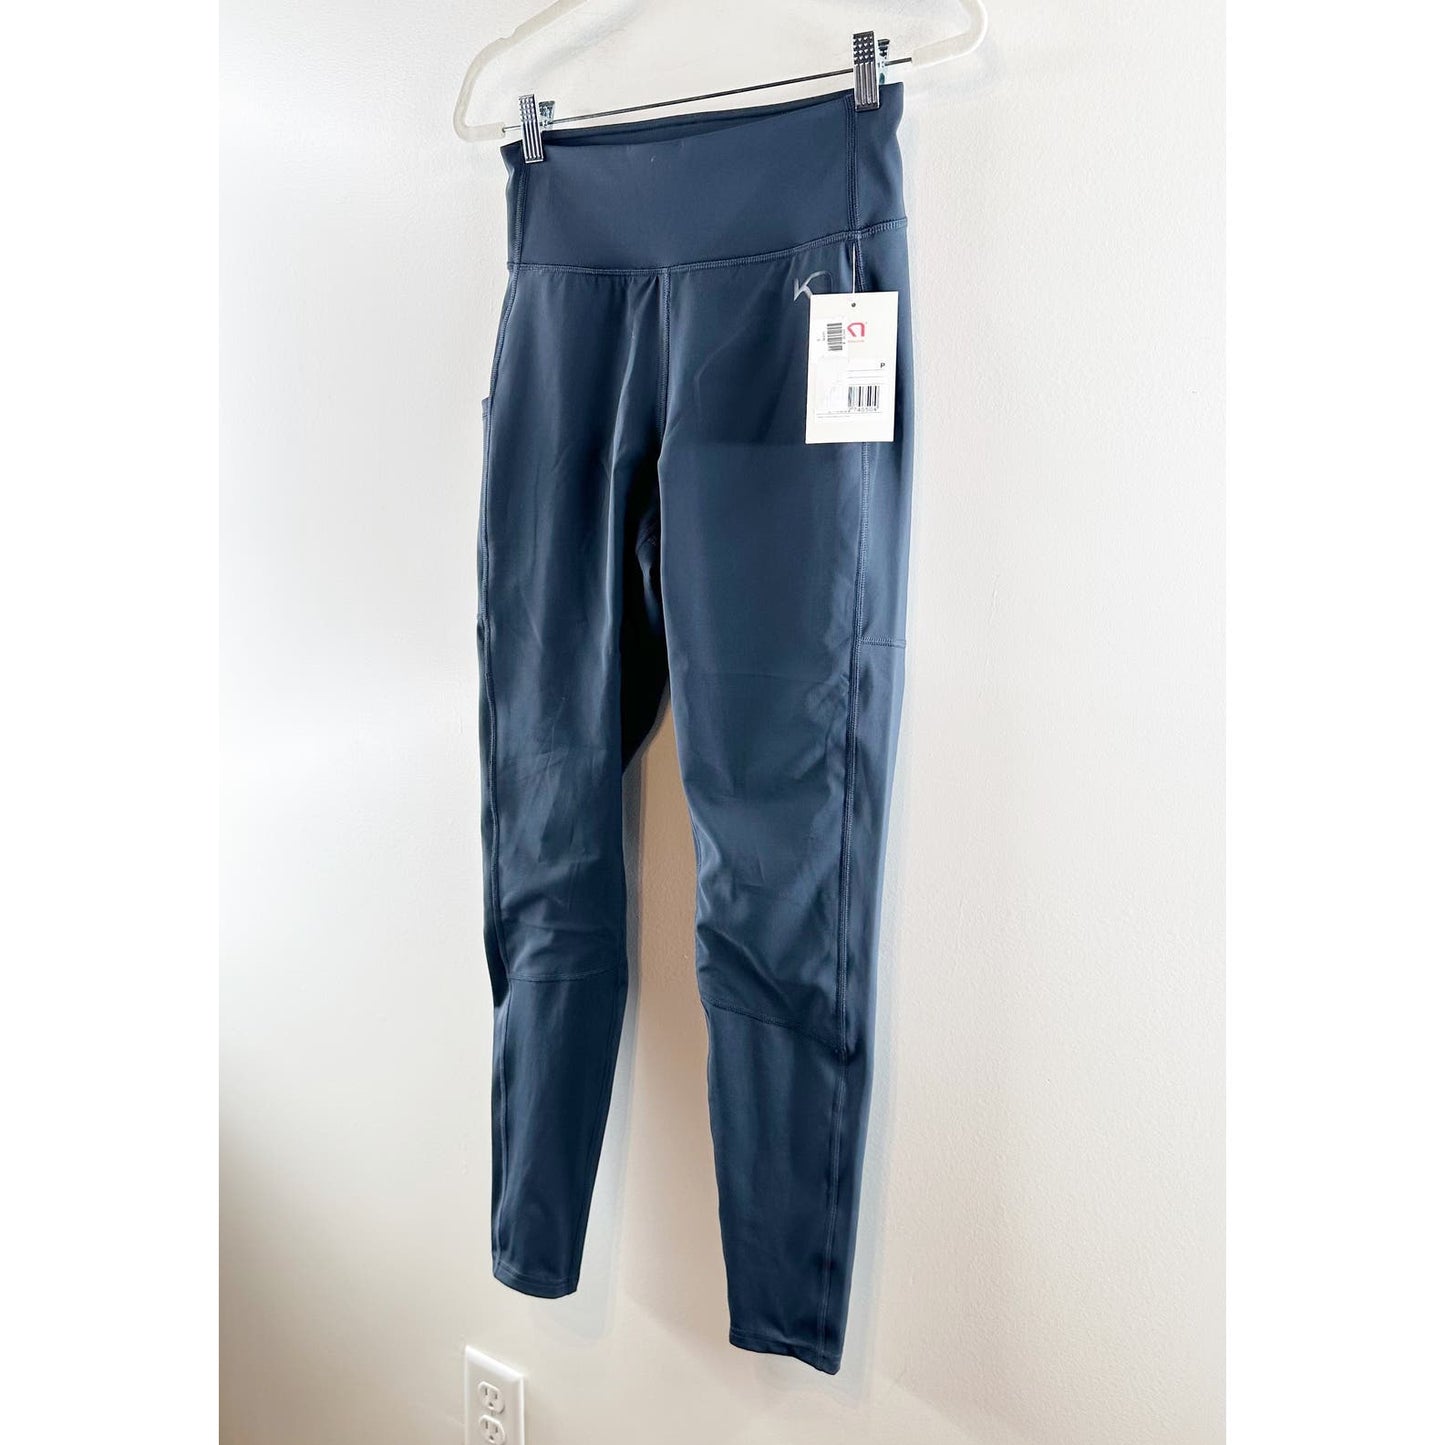 Kari Traa High Rise Side Pocket Baselayer Pants Leggings Navy Blue Small